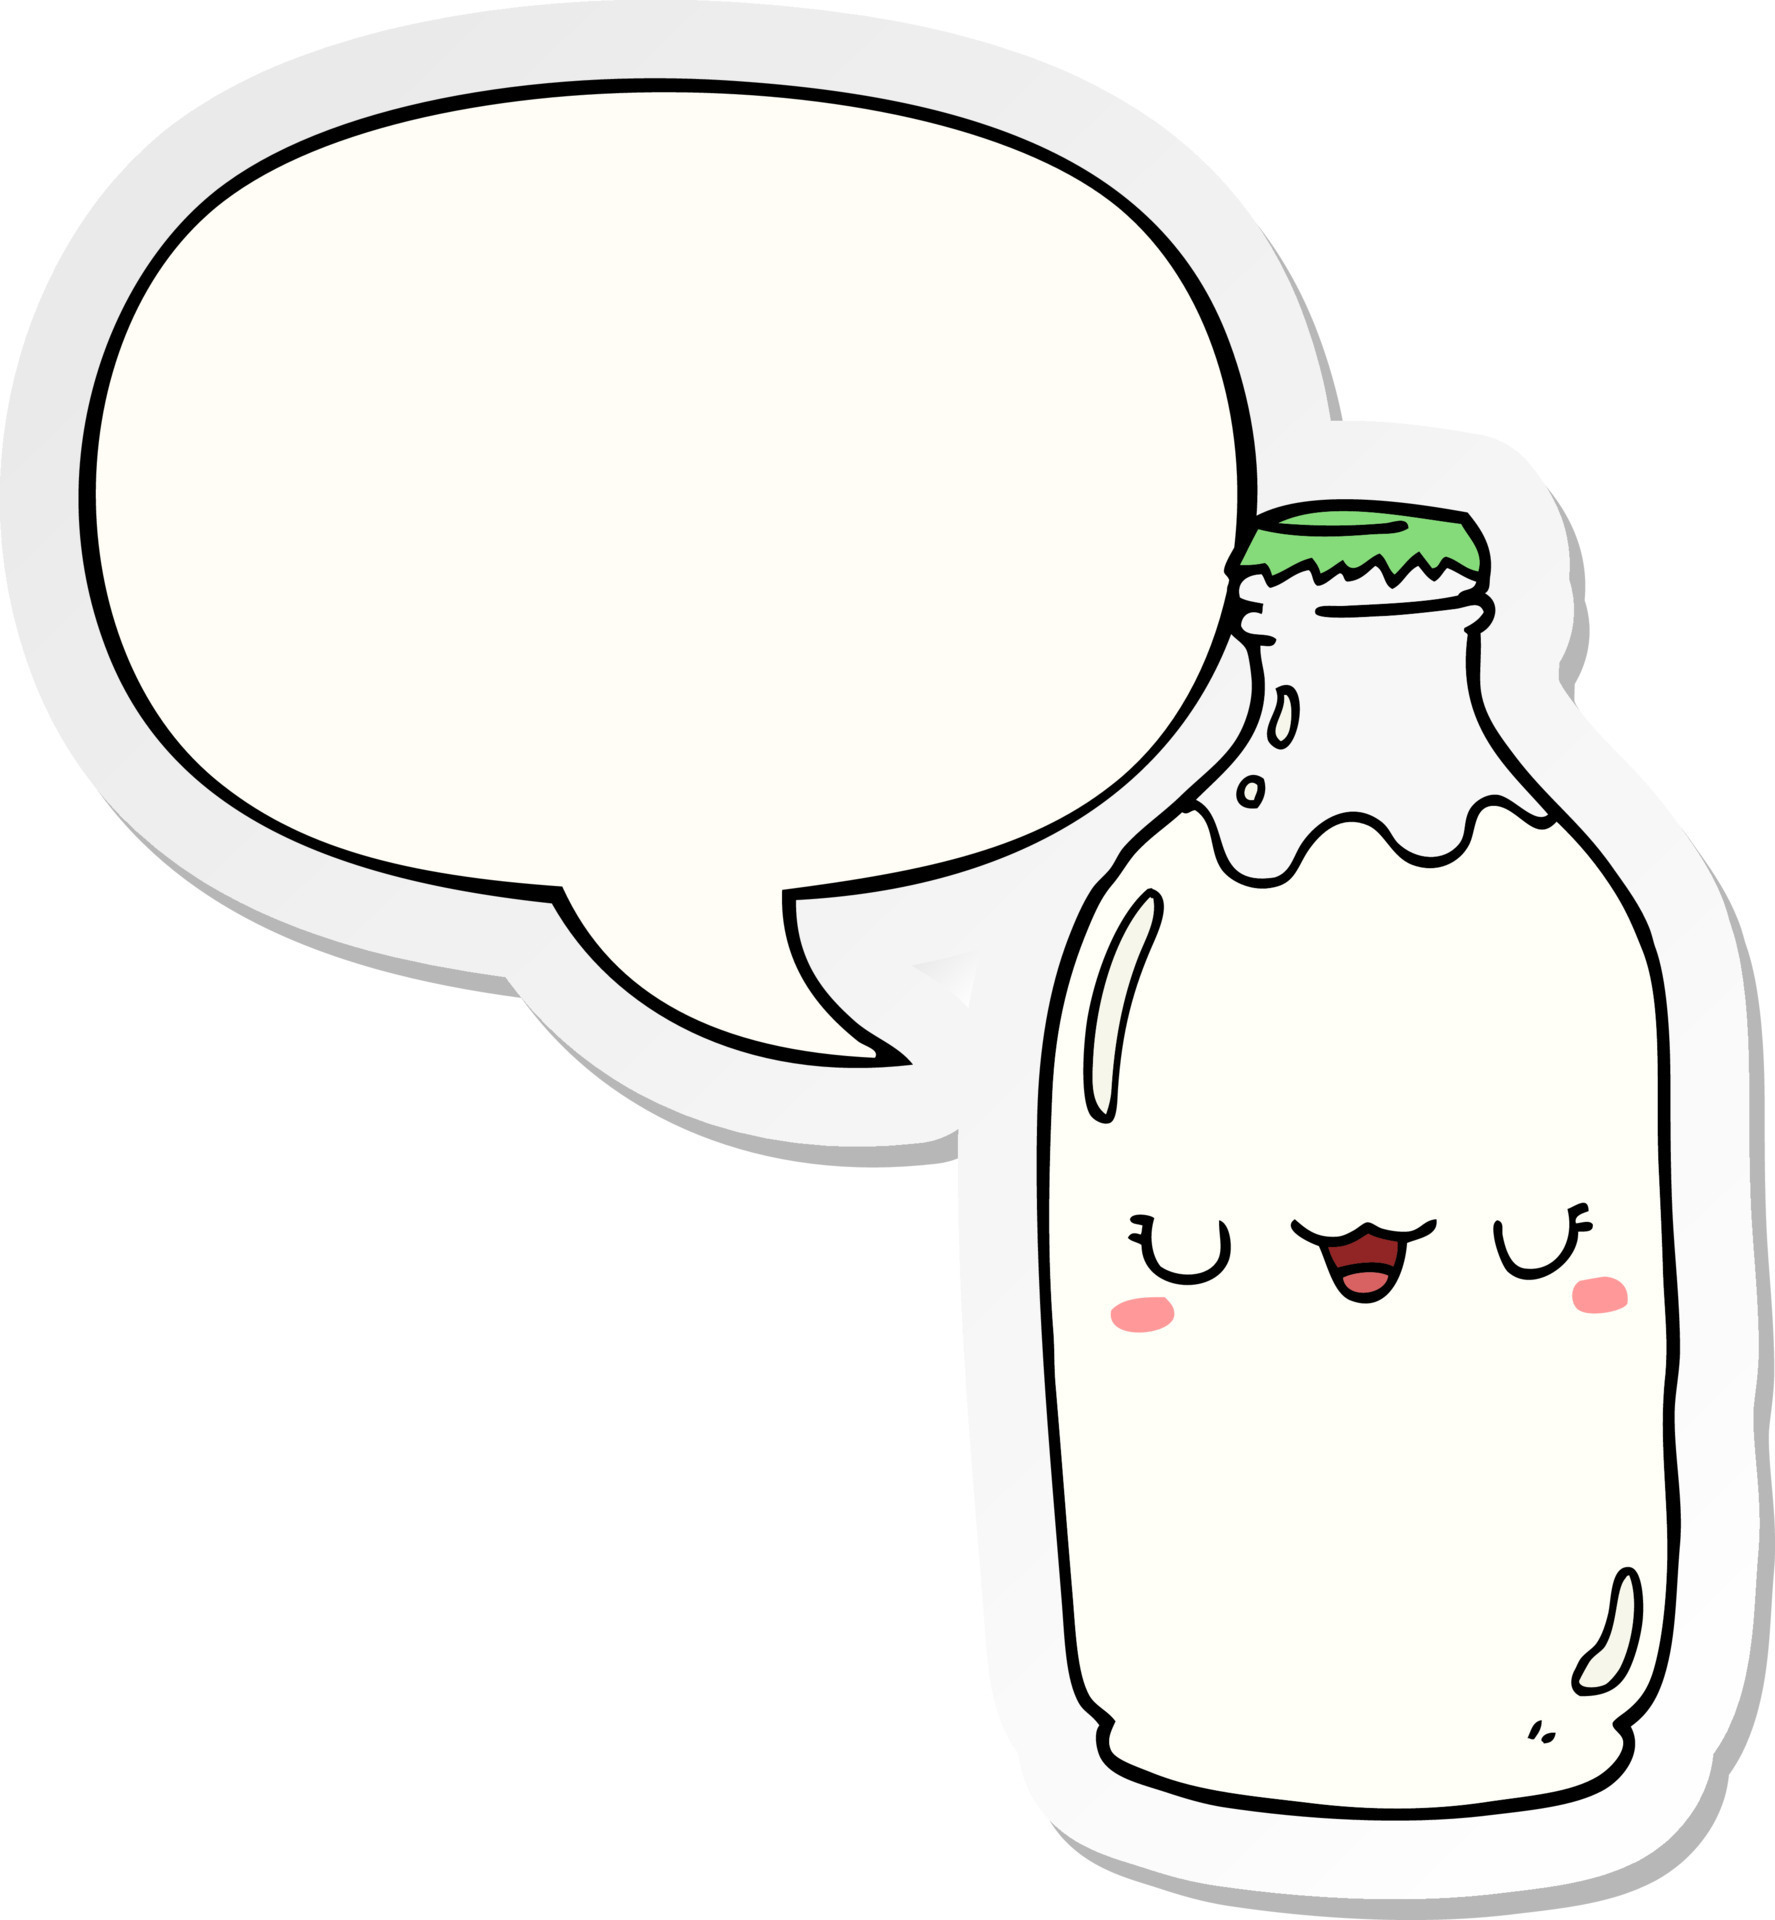 cute cartoon milk bottle and speech bubble sticker 10472723 Vector Art at  Vecteezy